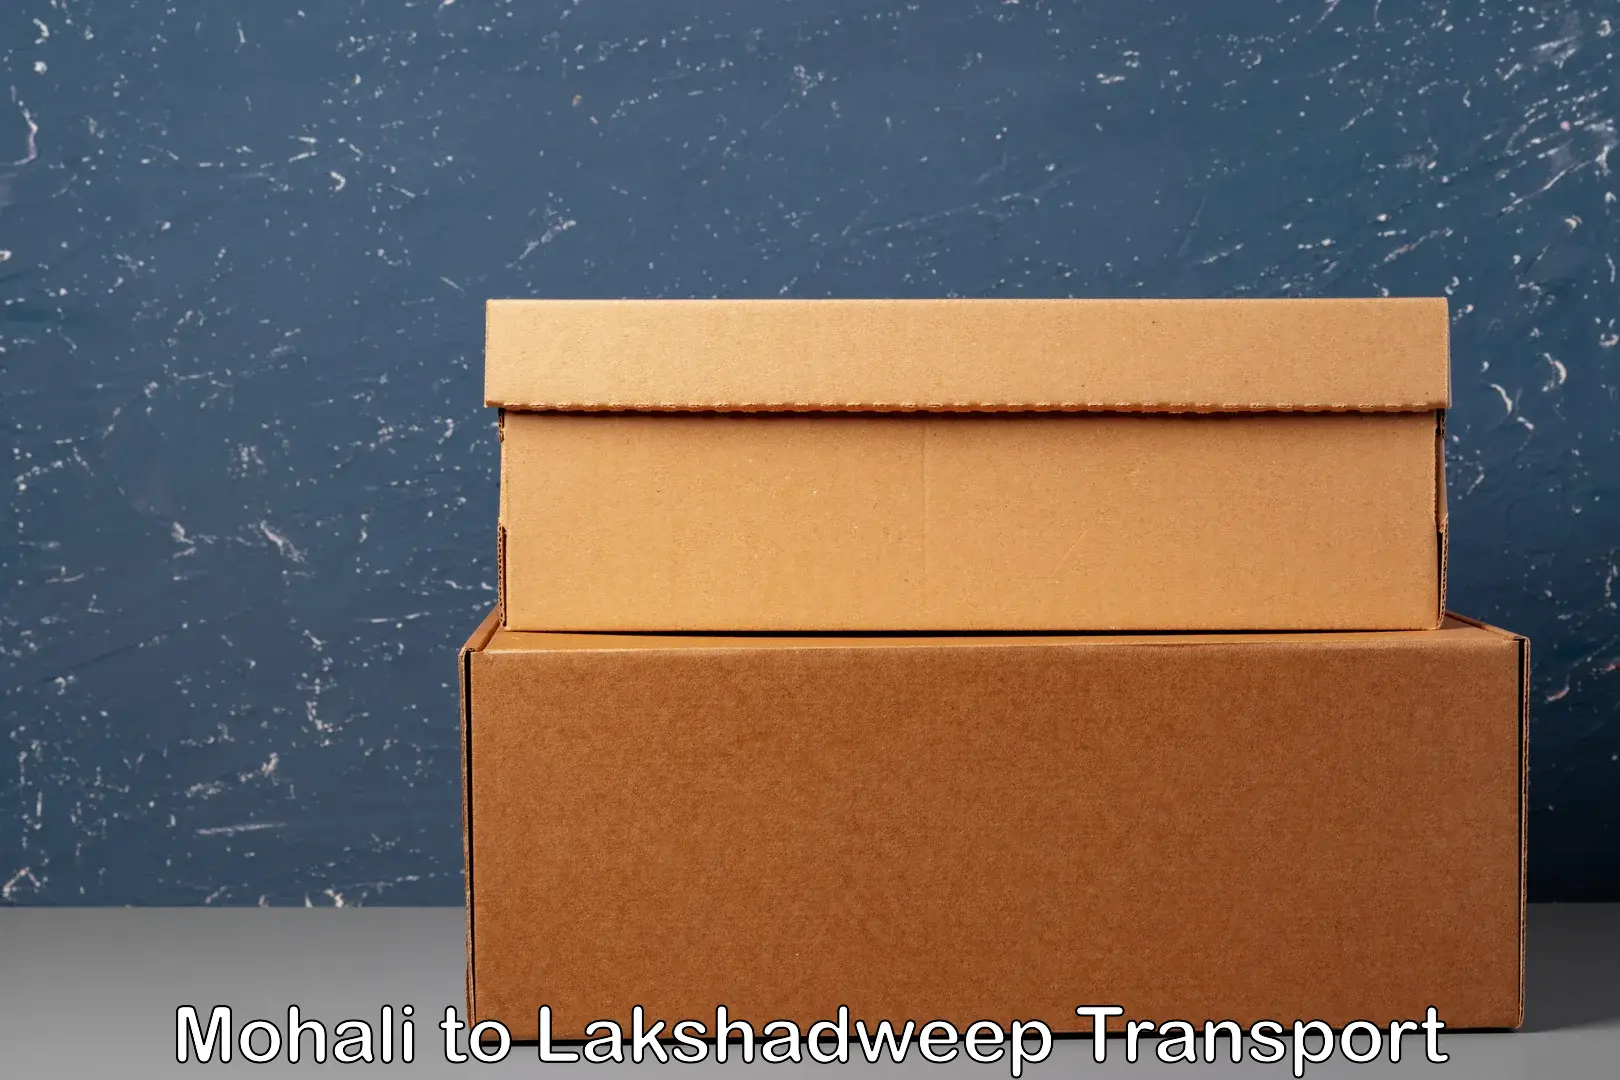 Shipping partner Mohali to Lakshadweep